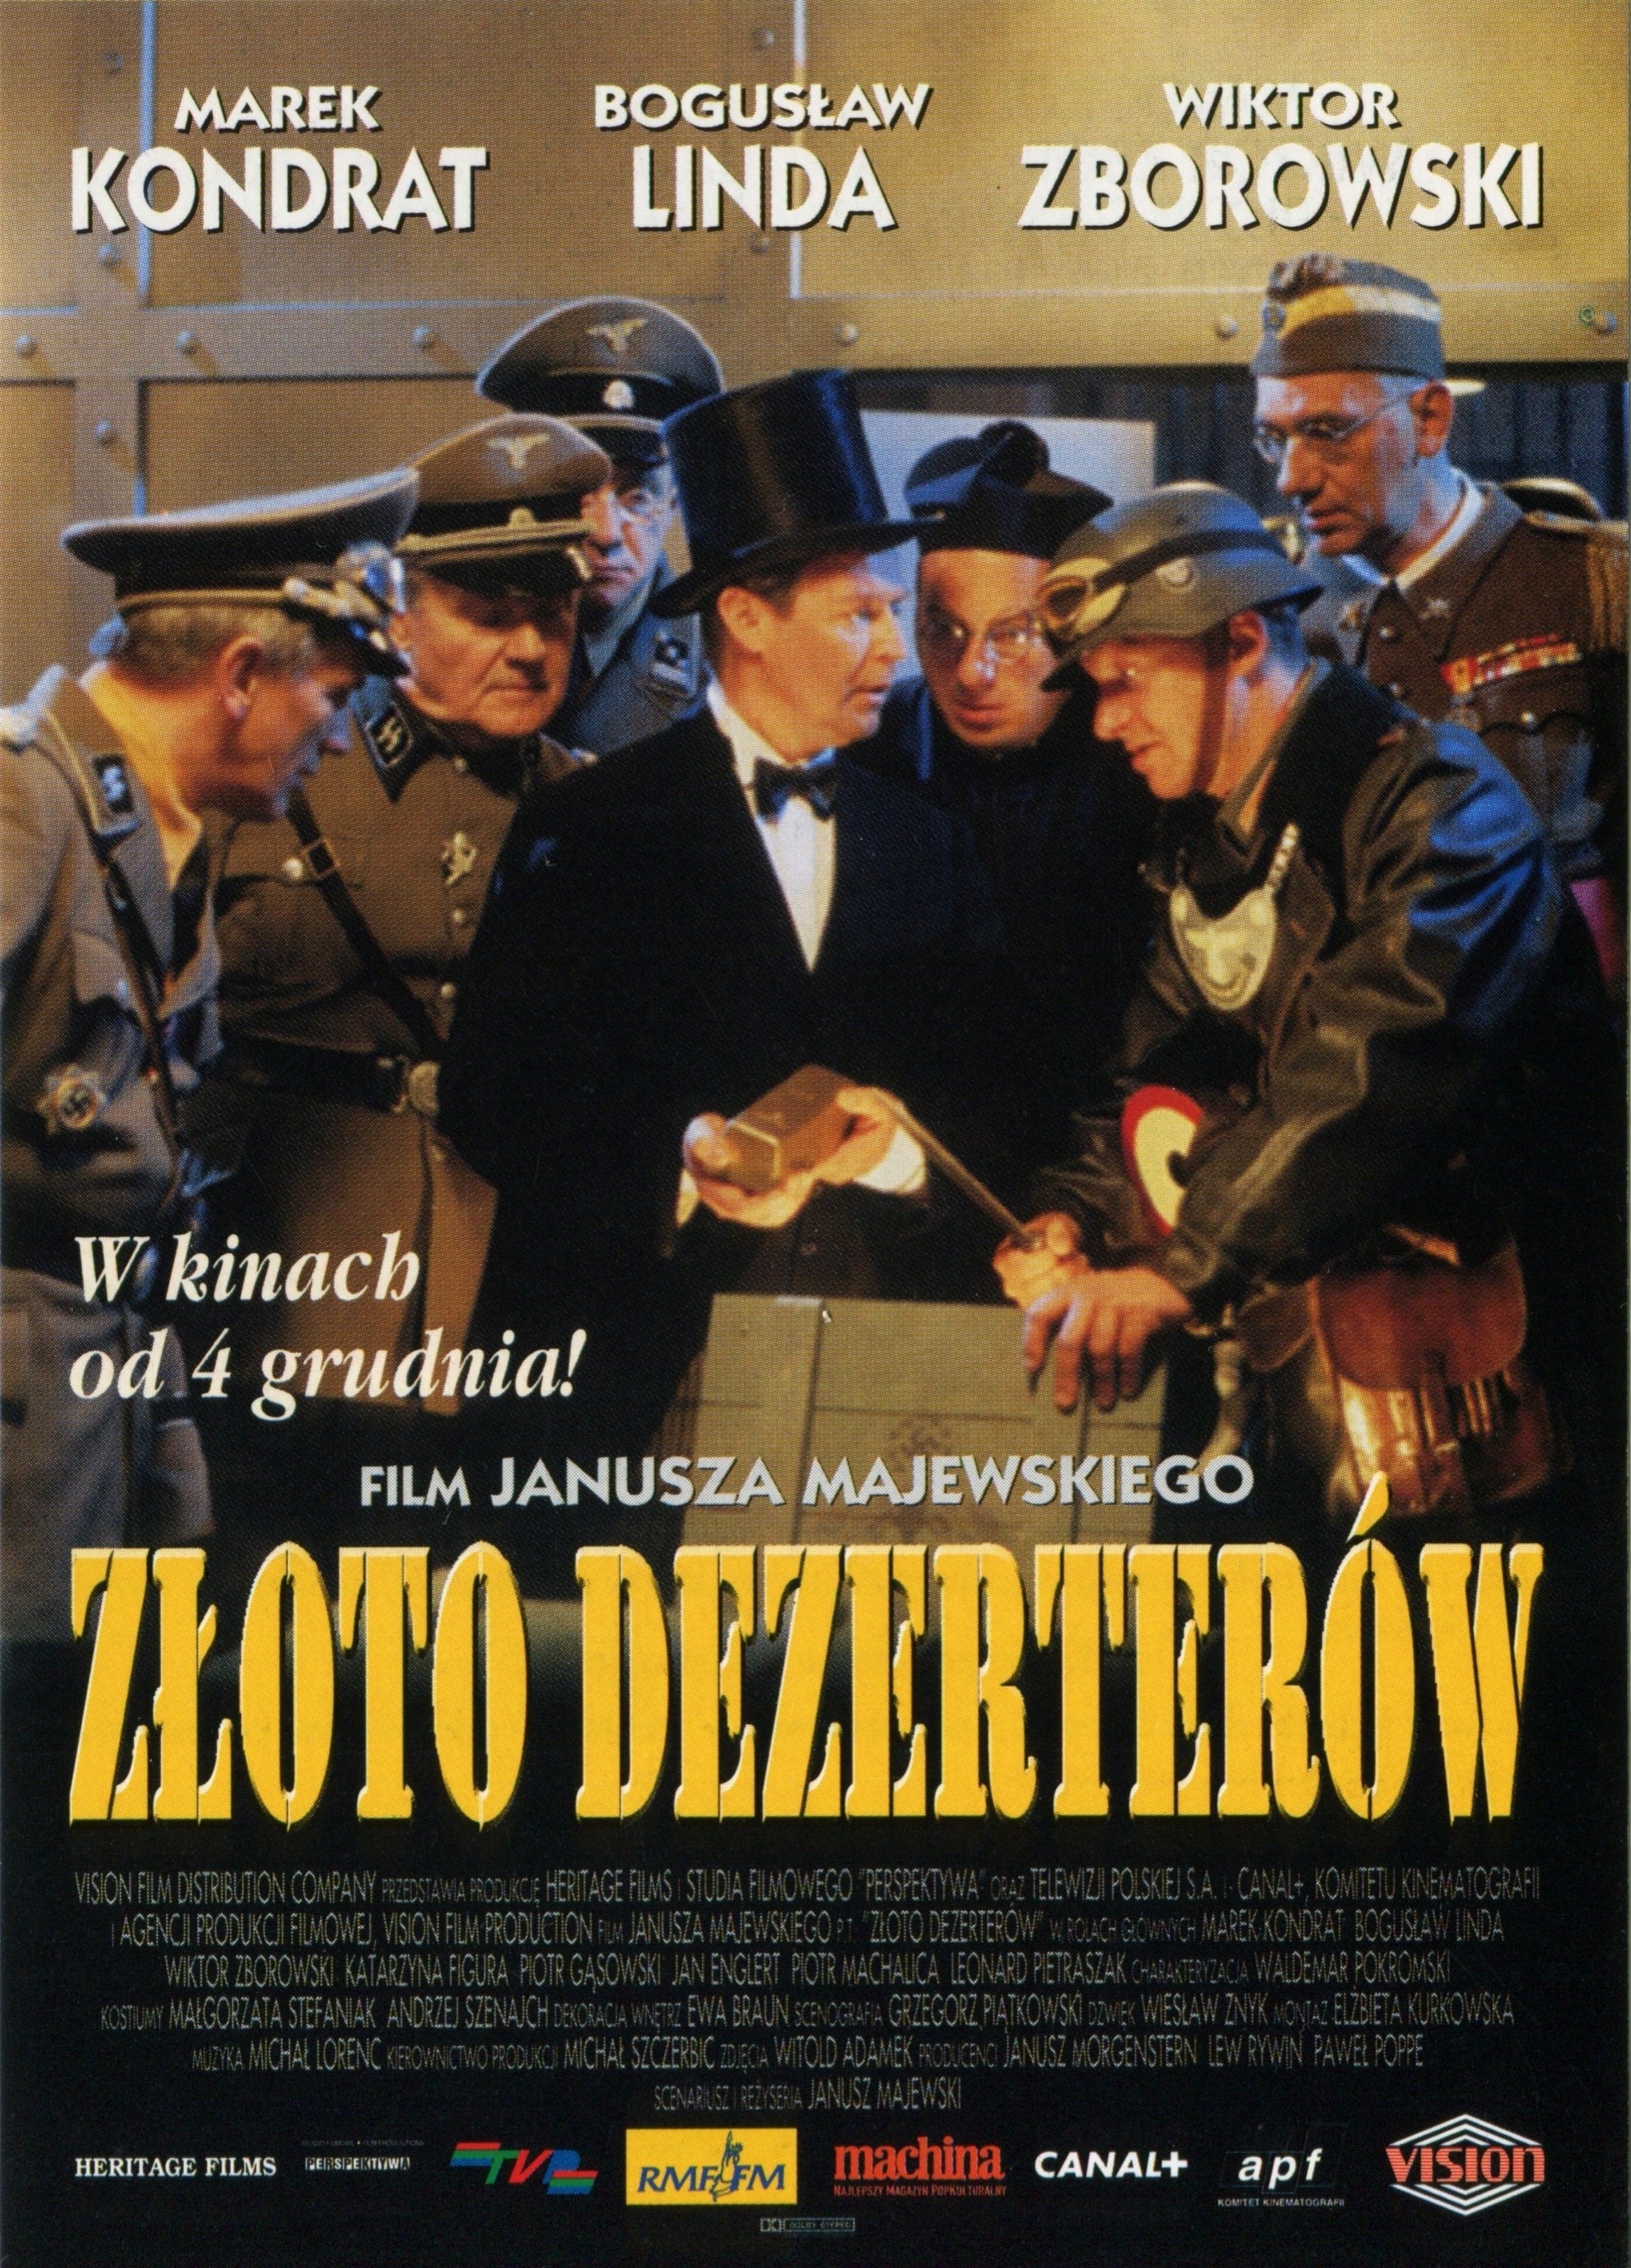 zloto-dezerterow-ulotki-filmowe-movie-flyers-ulotki-filmowe-movie